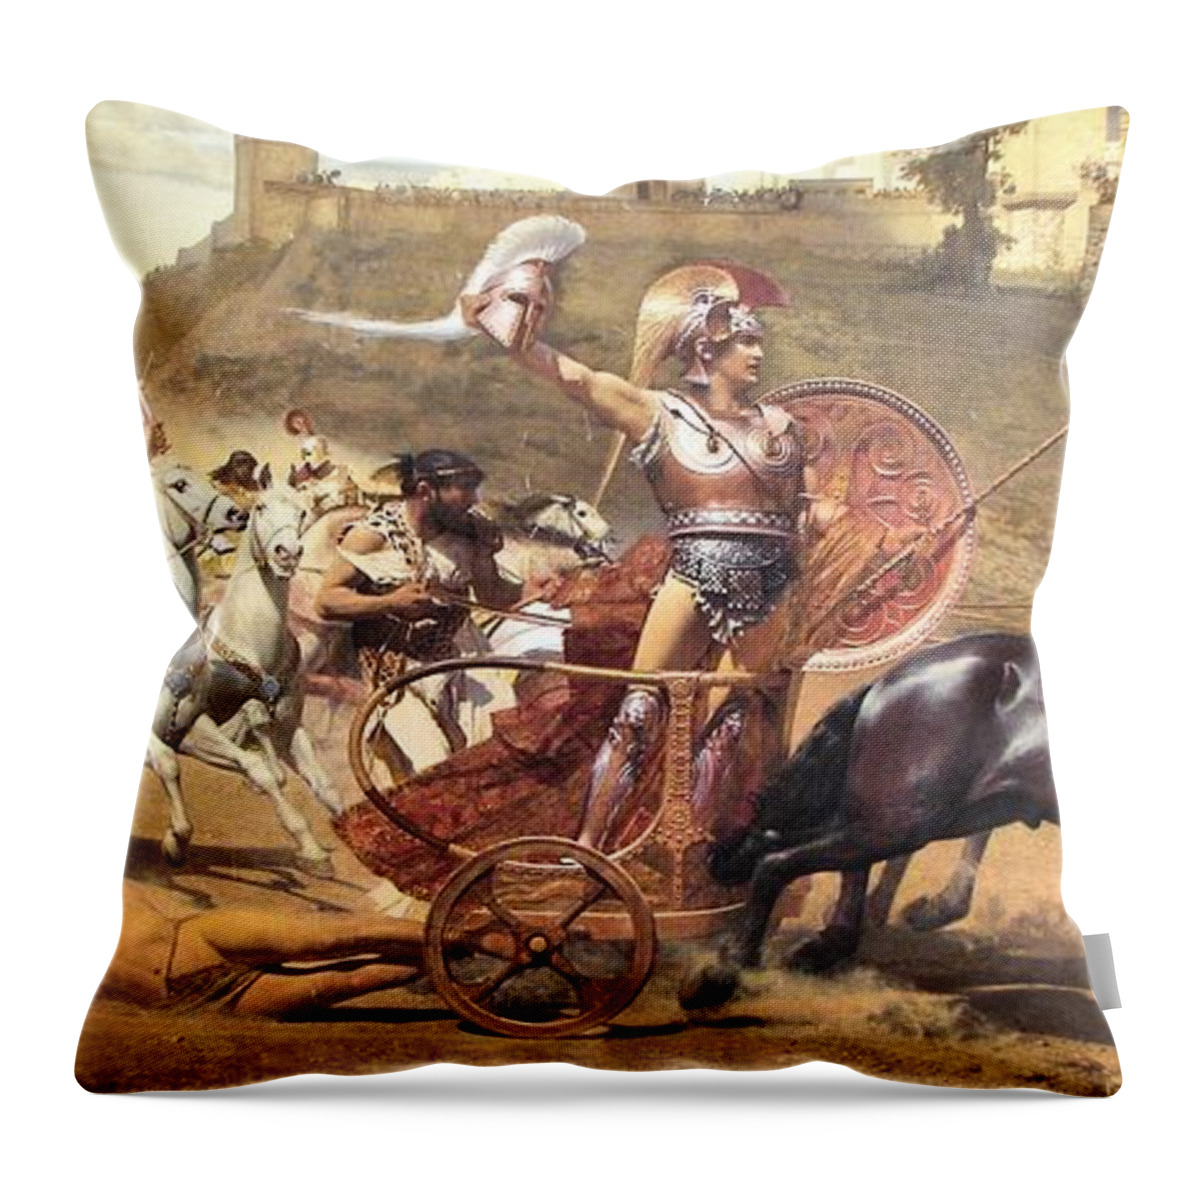 Iliad Throw Pillow featuring the painting Triumphant Achilles by Franz von Matsch